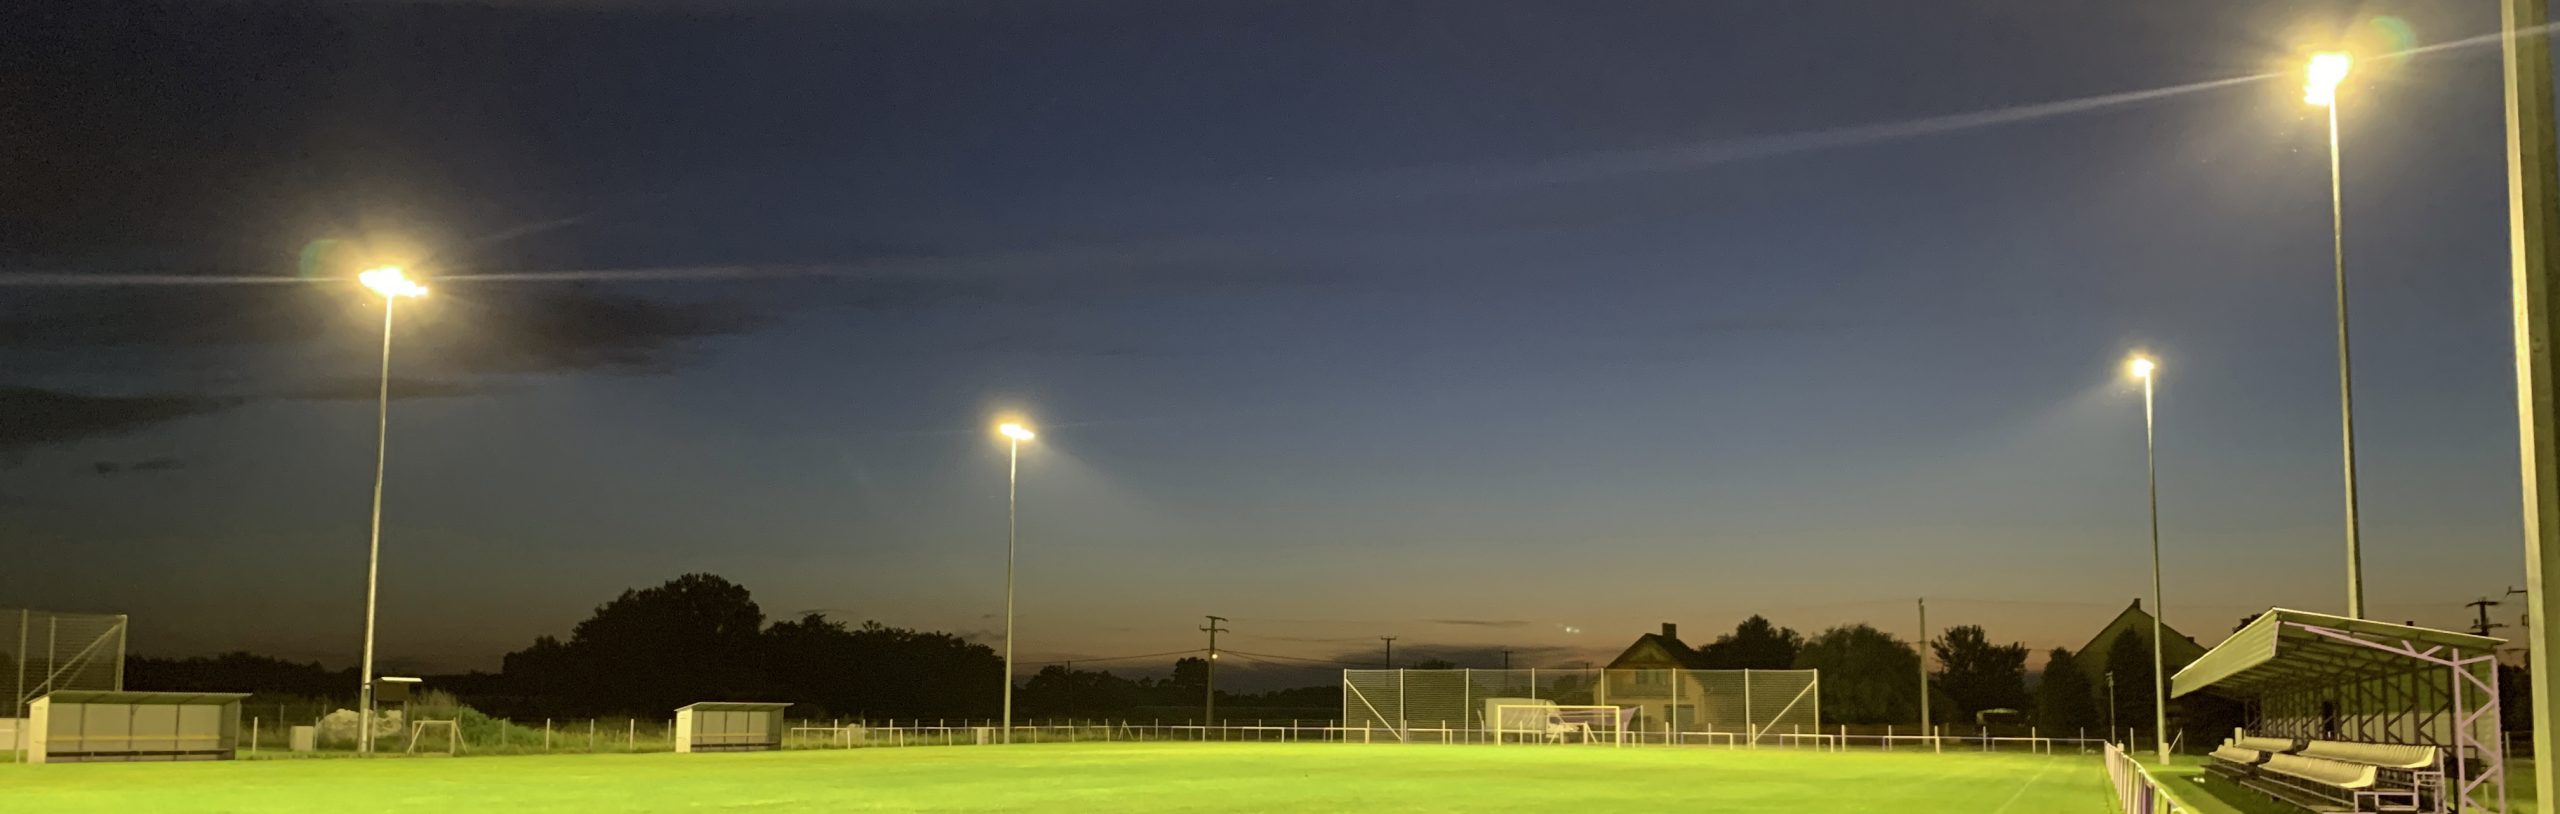 FC Tiszaújváros – nagypálya 350lux világítási rendszerrel